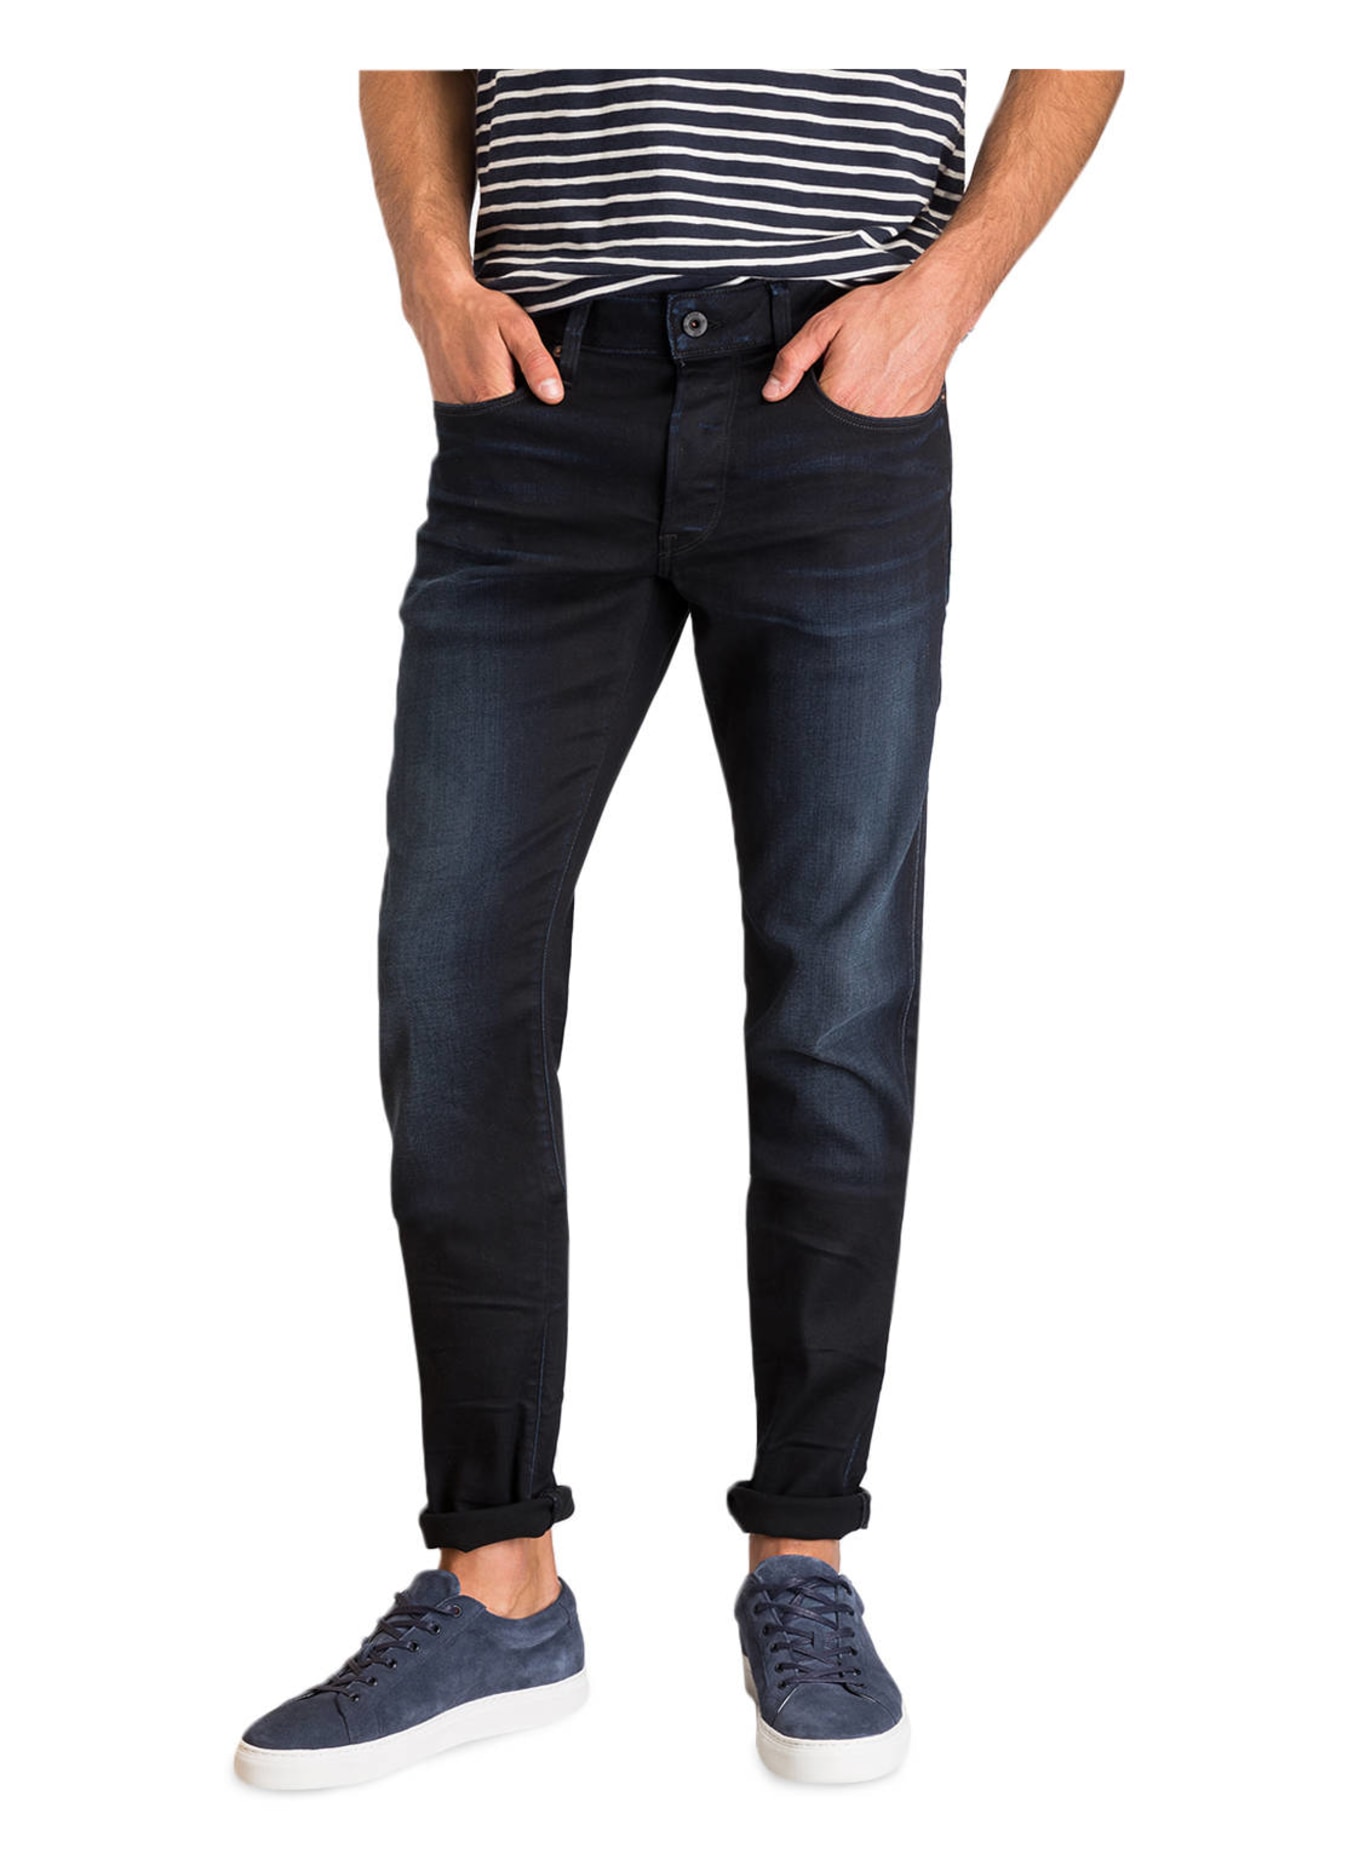 G-Star RAW Jeans 3301 Slim Fit, Farbe: 89 DK AGED (Bild 2)